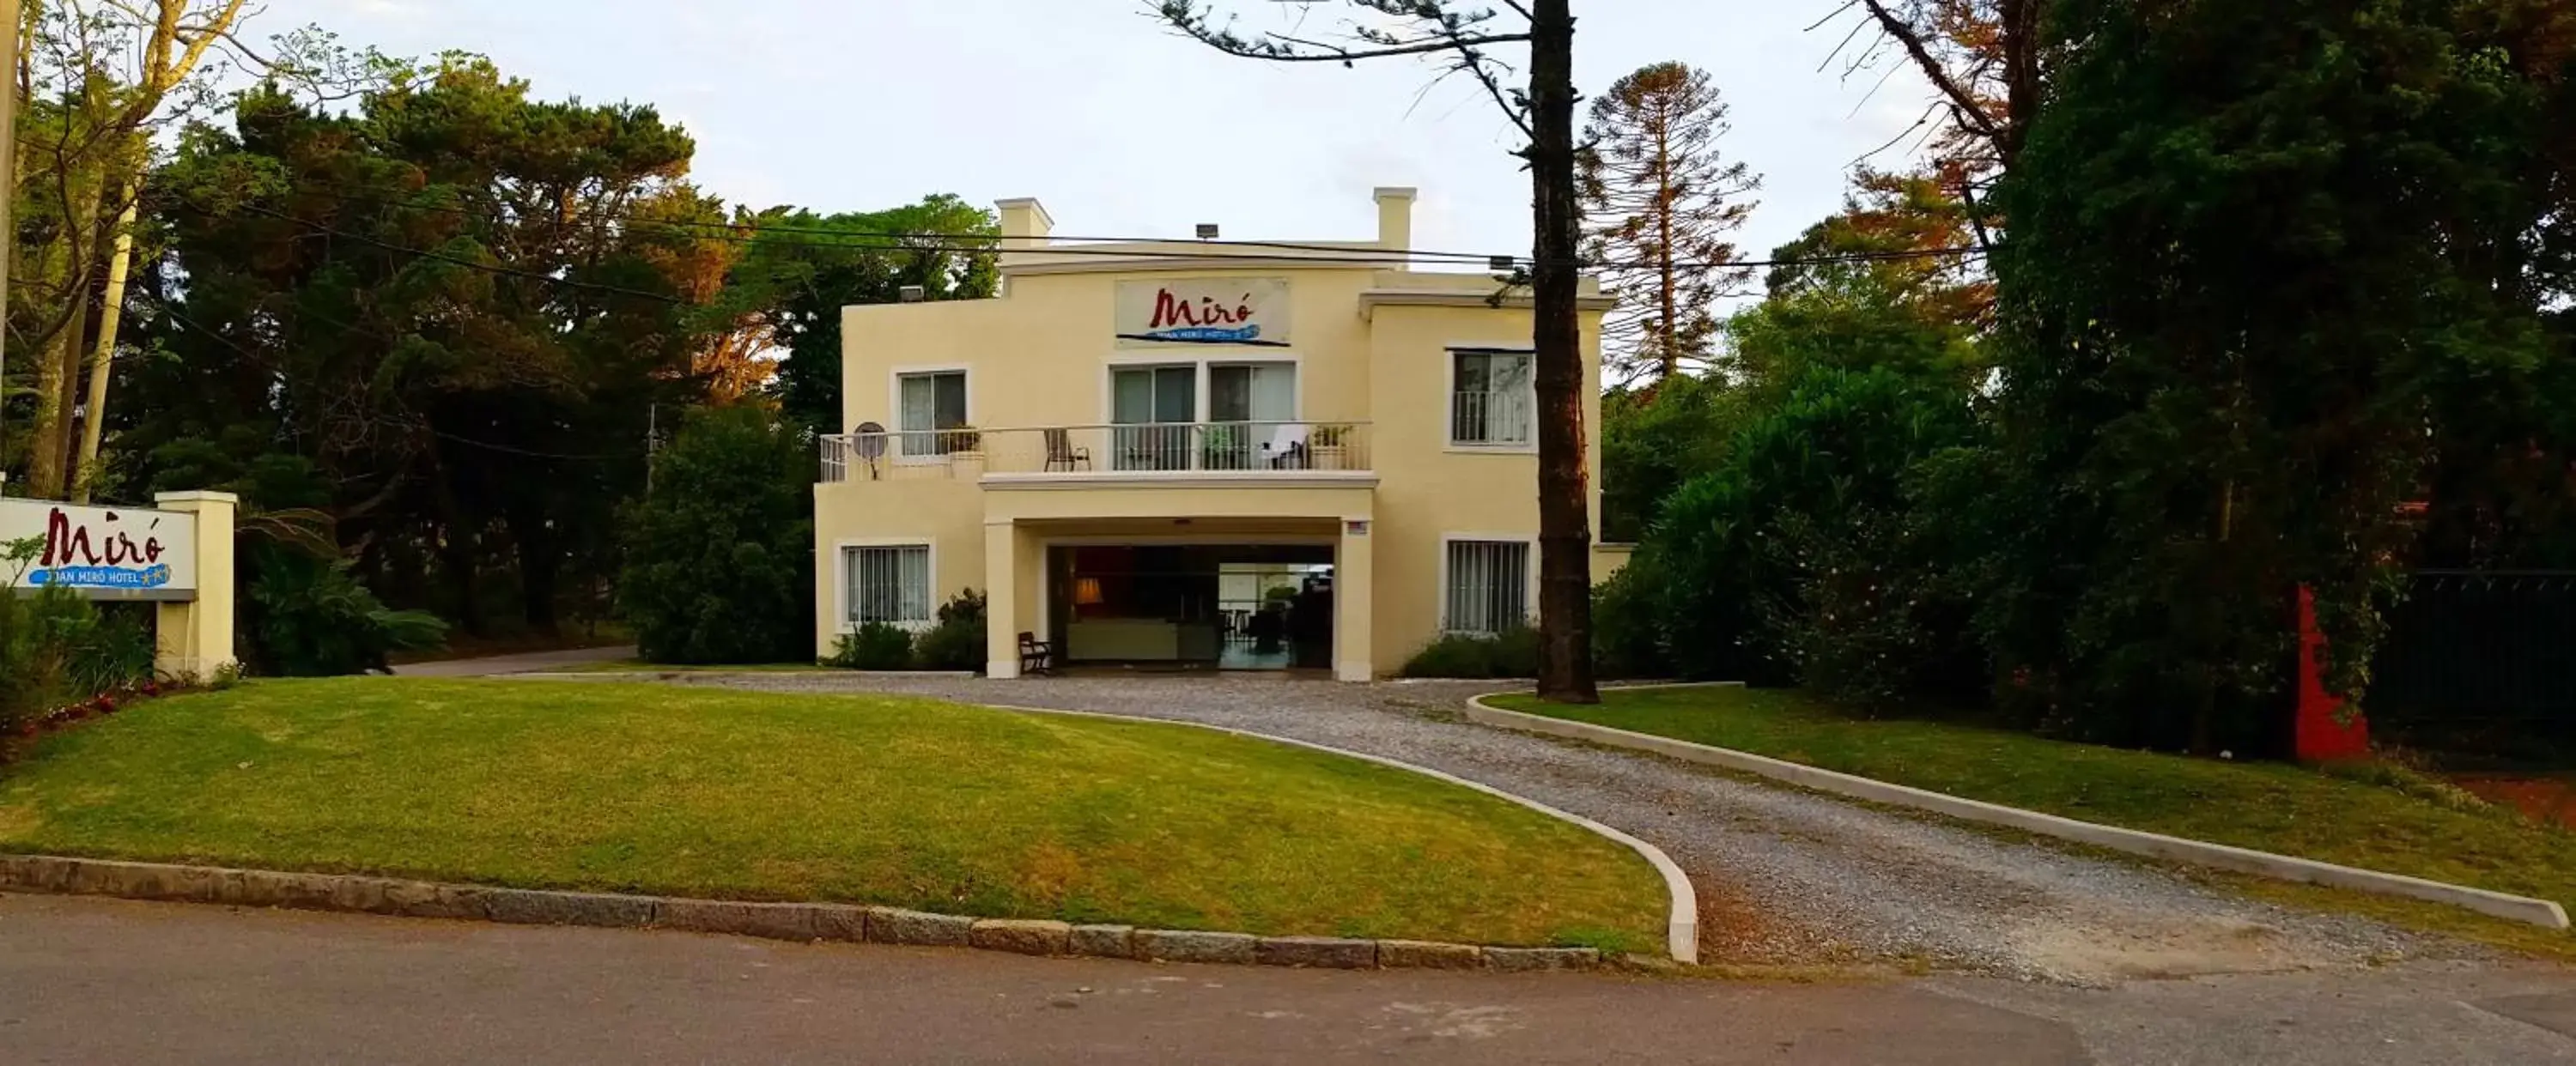 Facade/entrance, Property Building in Joan Miró Hotel